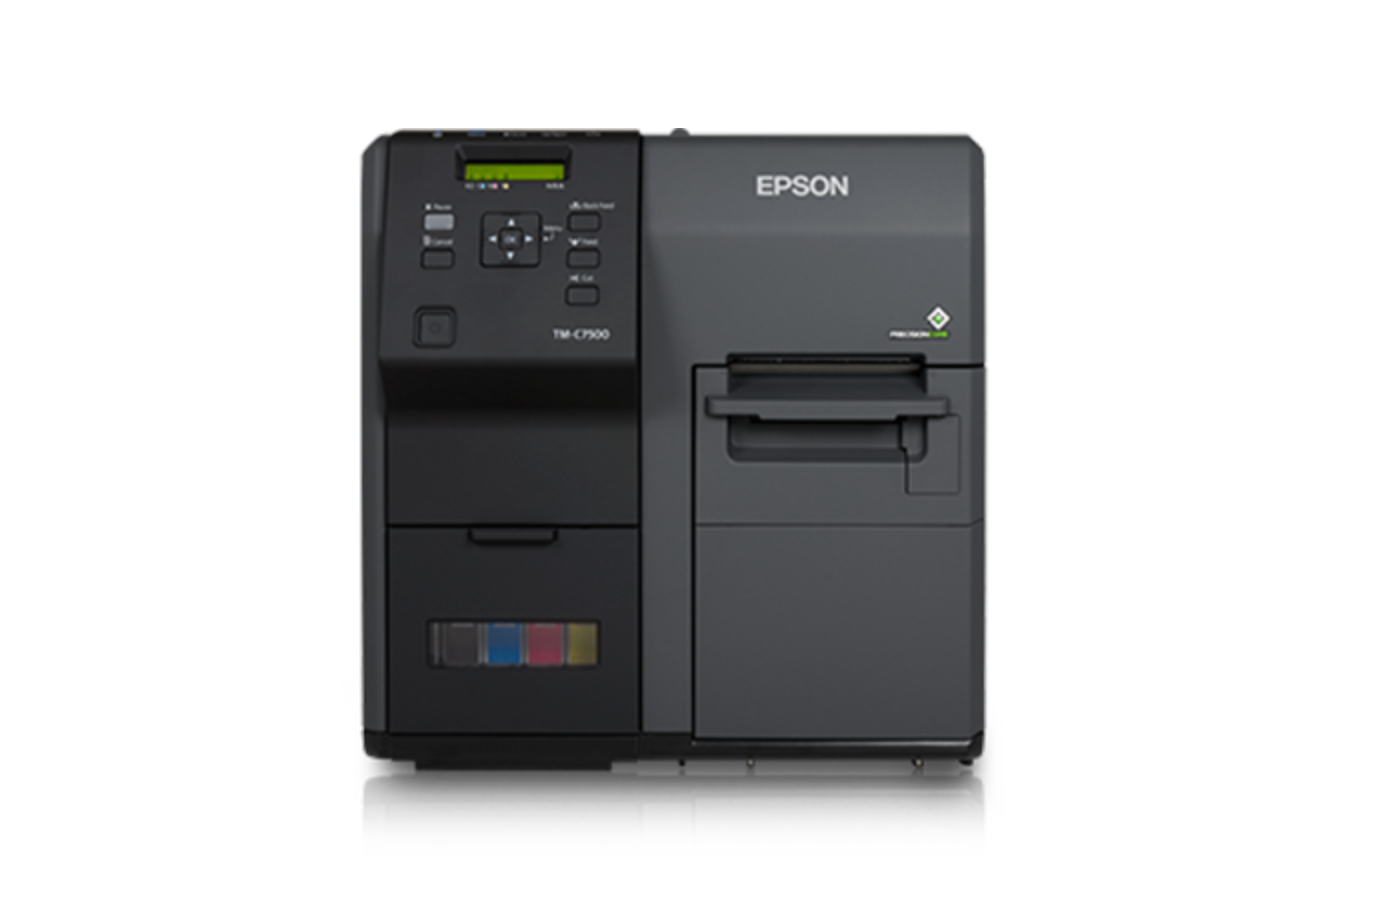 Impresoras para etiquetas adhesivas Epson - Etiquetas rápidas